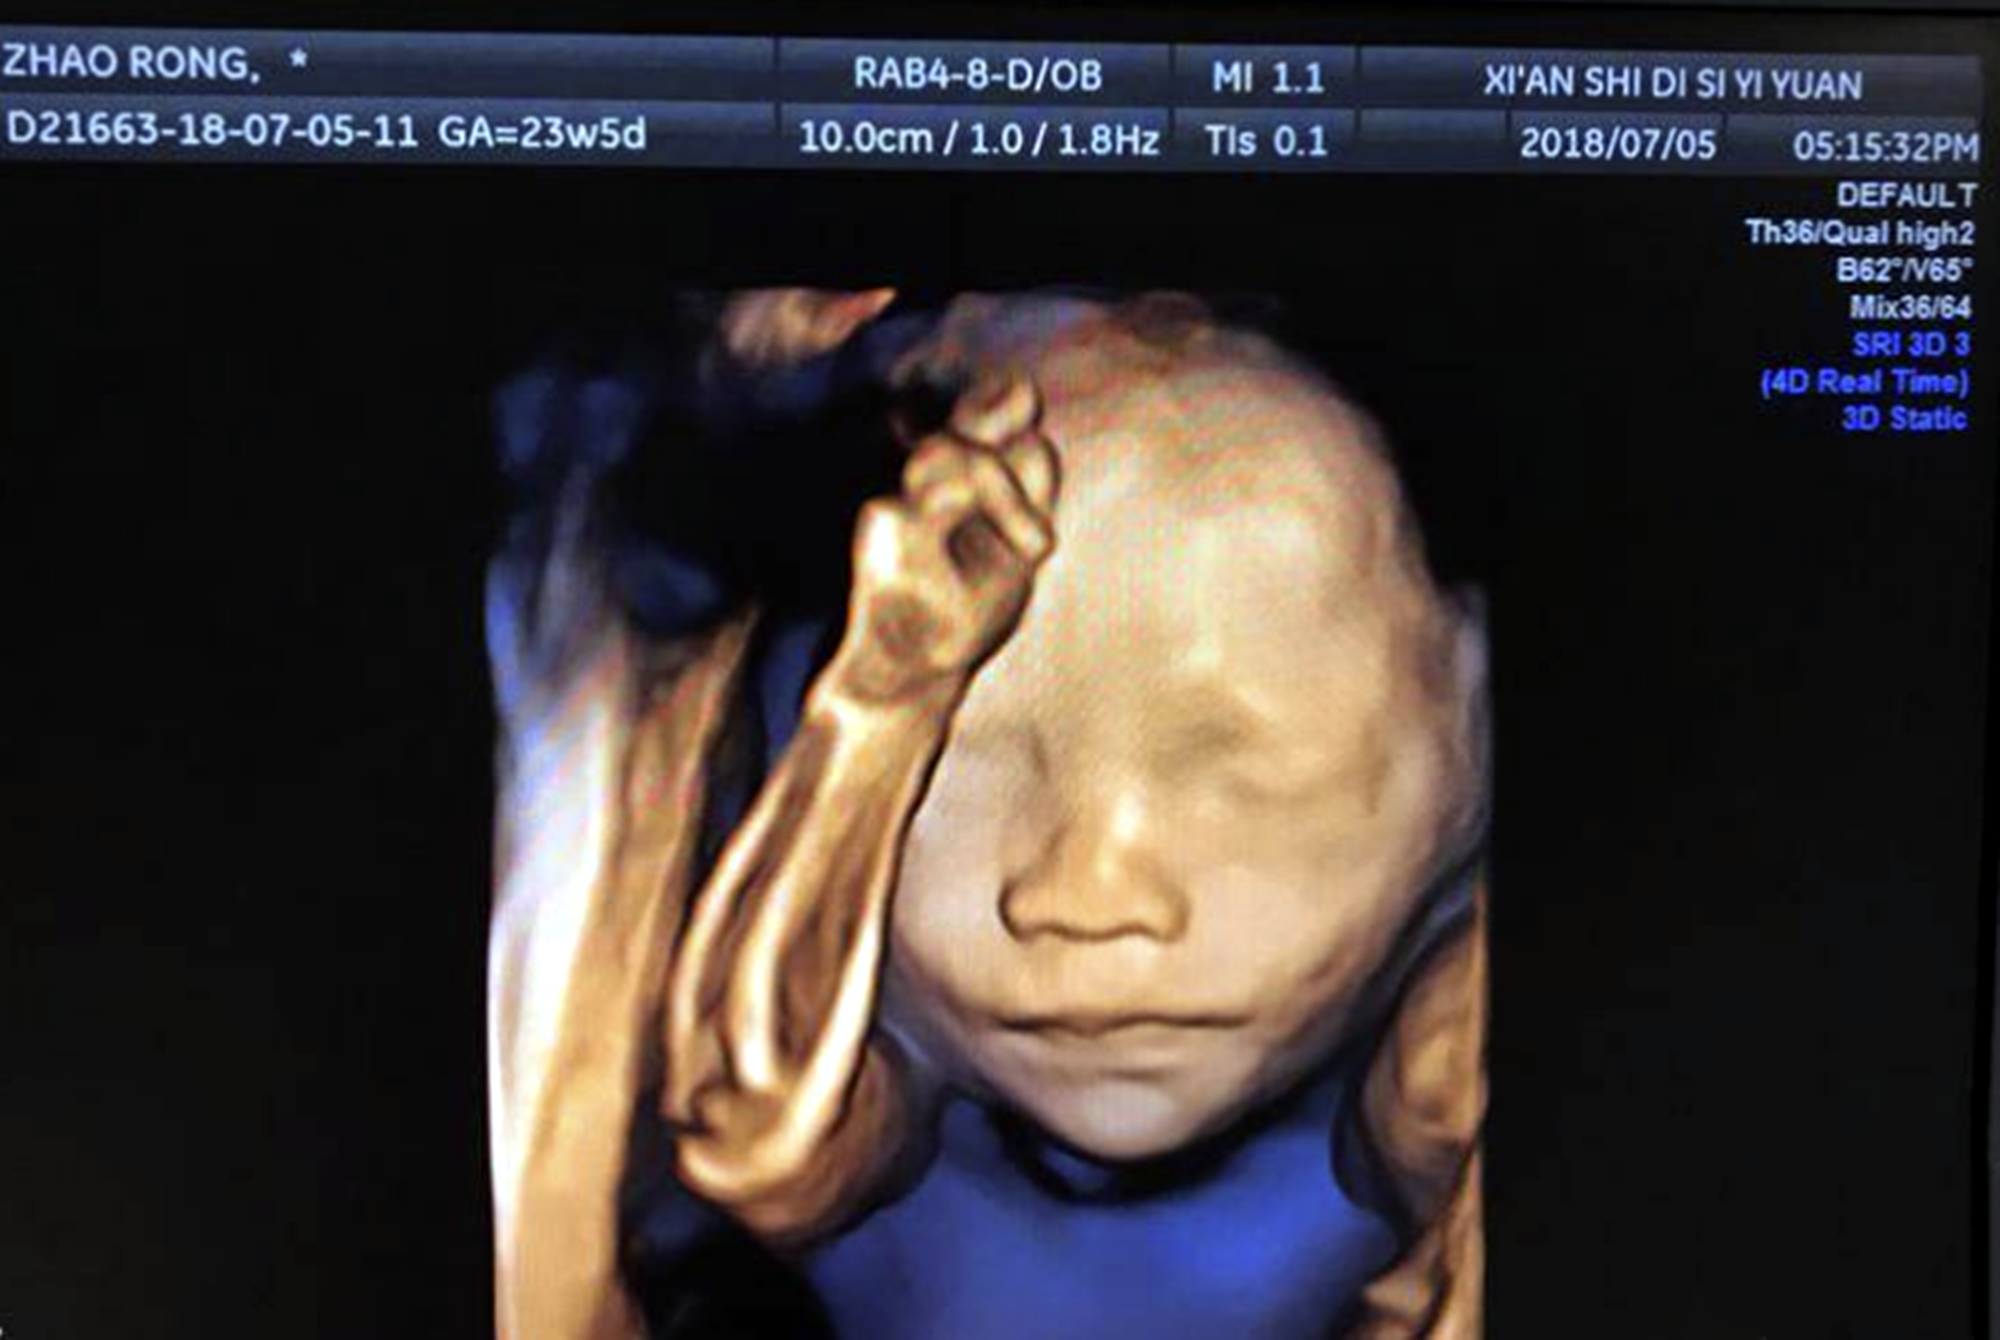 胎儿四维照鼻梁塌陷宝爸质疑妈妈基因伪劣出生后却很惊喜